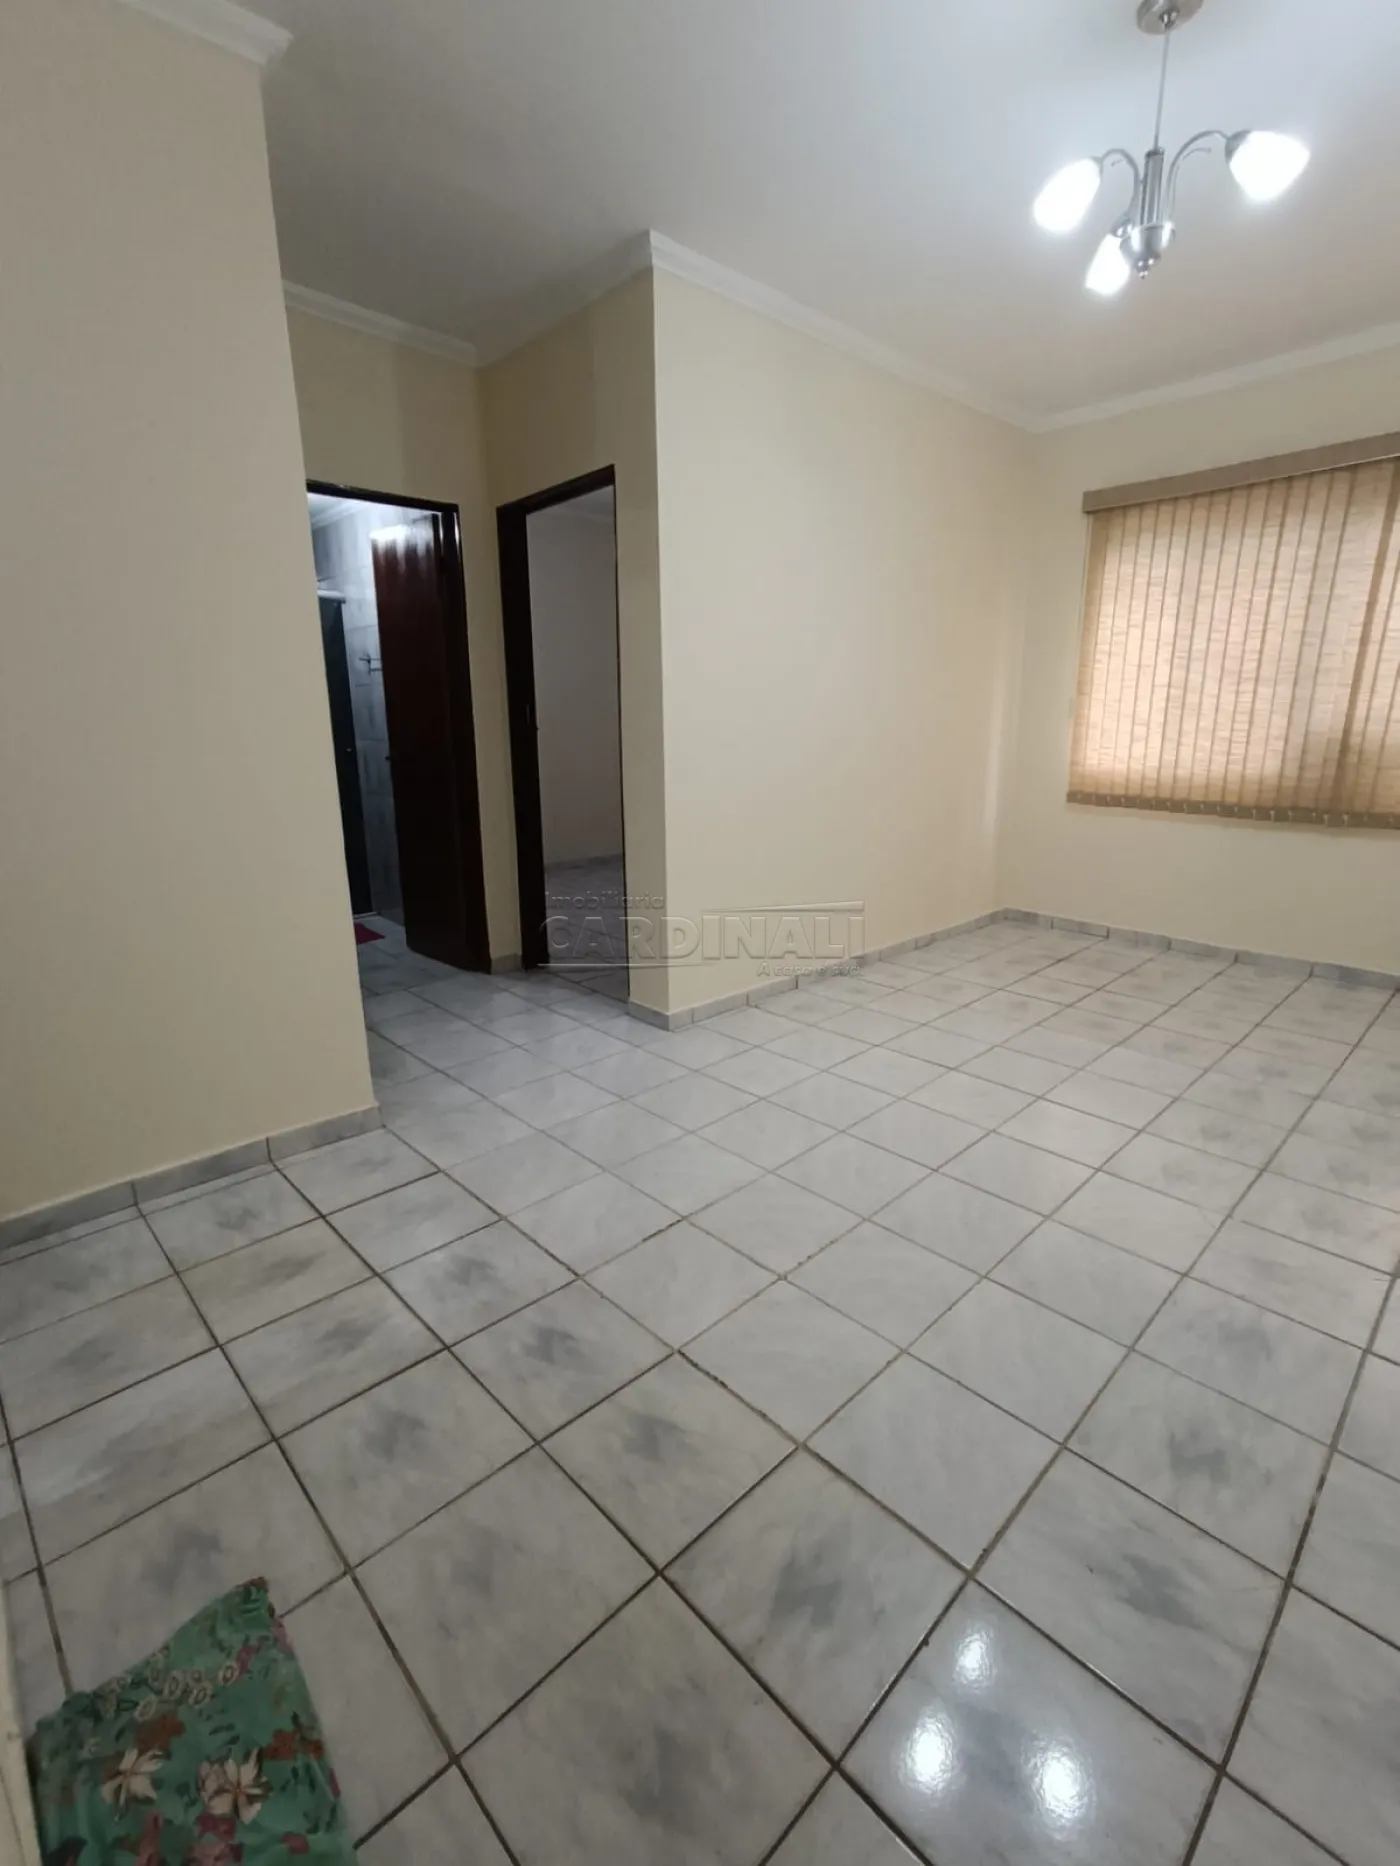 Alugar Apartamento / Padrão em São Carlos R$ 850,00 - Foto 3